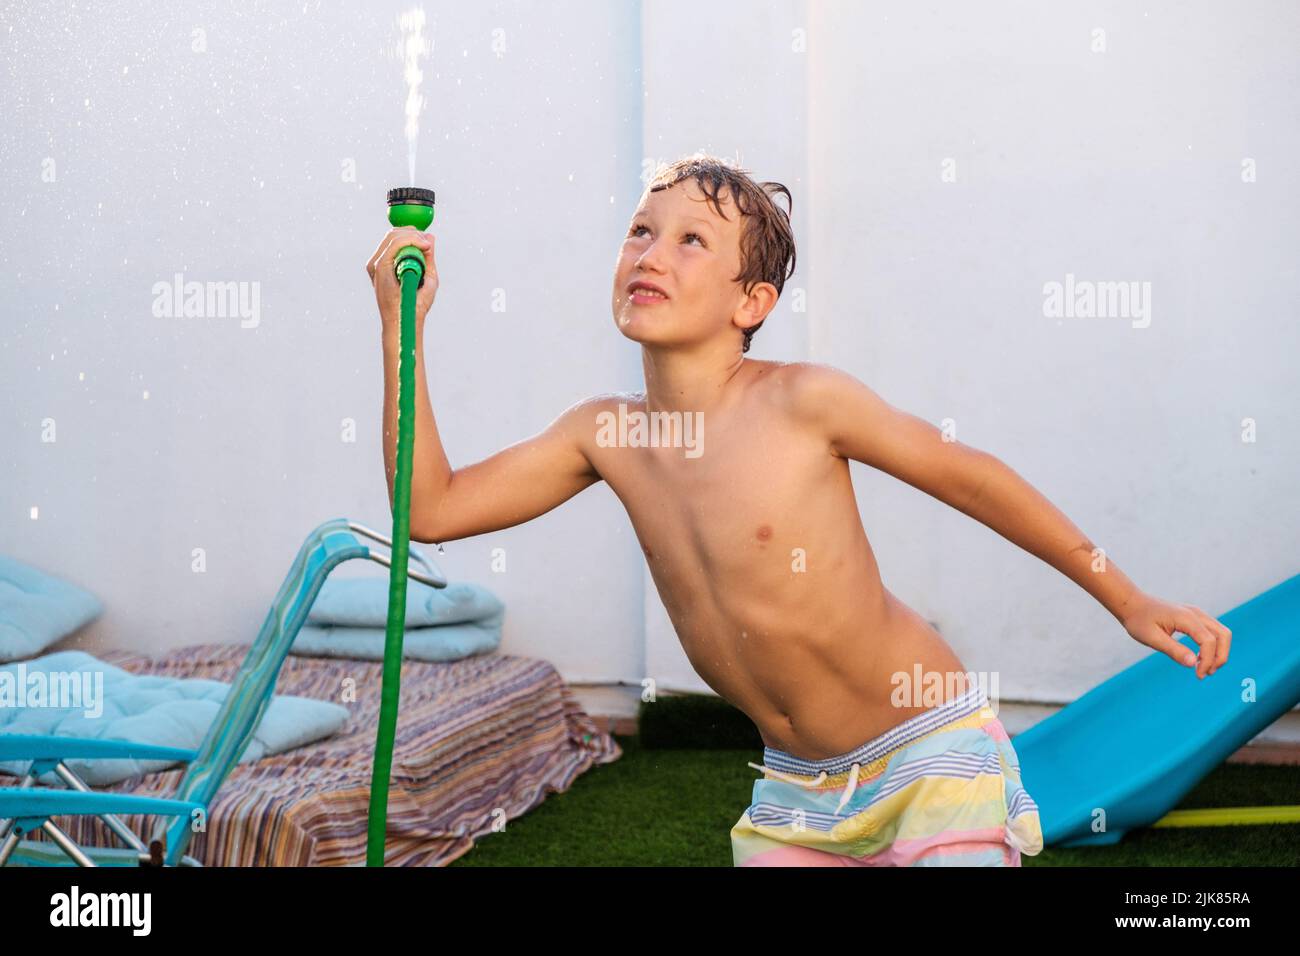 Enfant jouant avec un tuyau pour se rafraîchir avec de l'eau pendant une vague de chaleur estivale en Europe. Banque D'Images